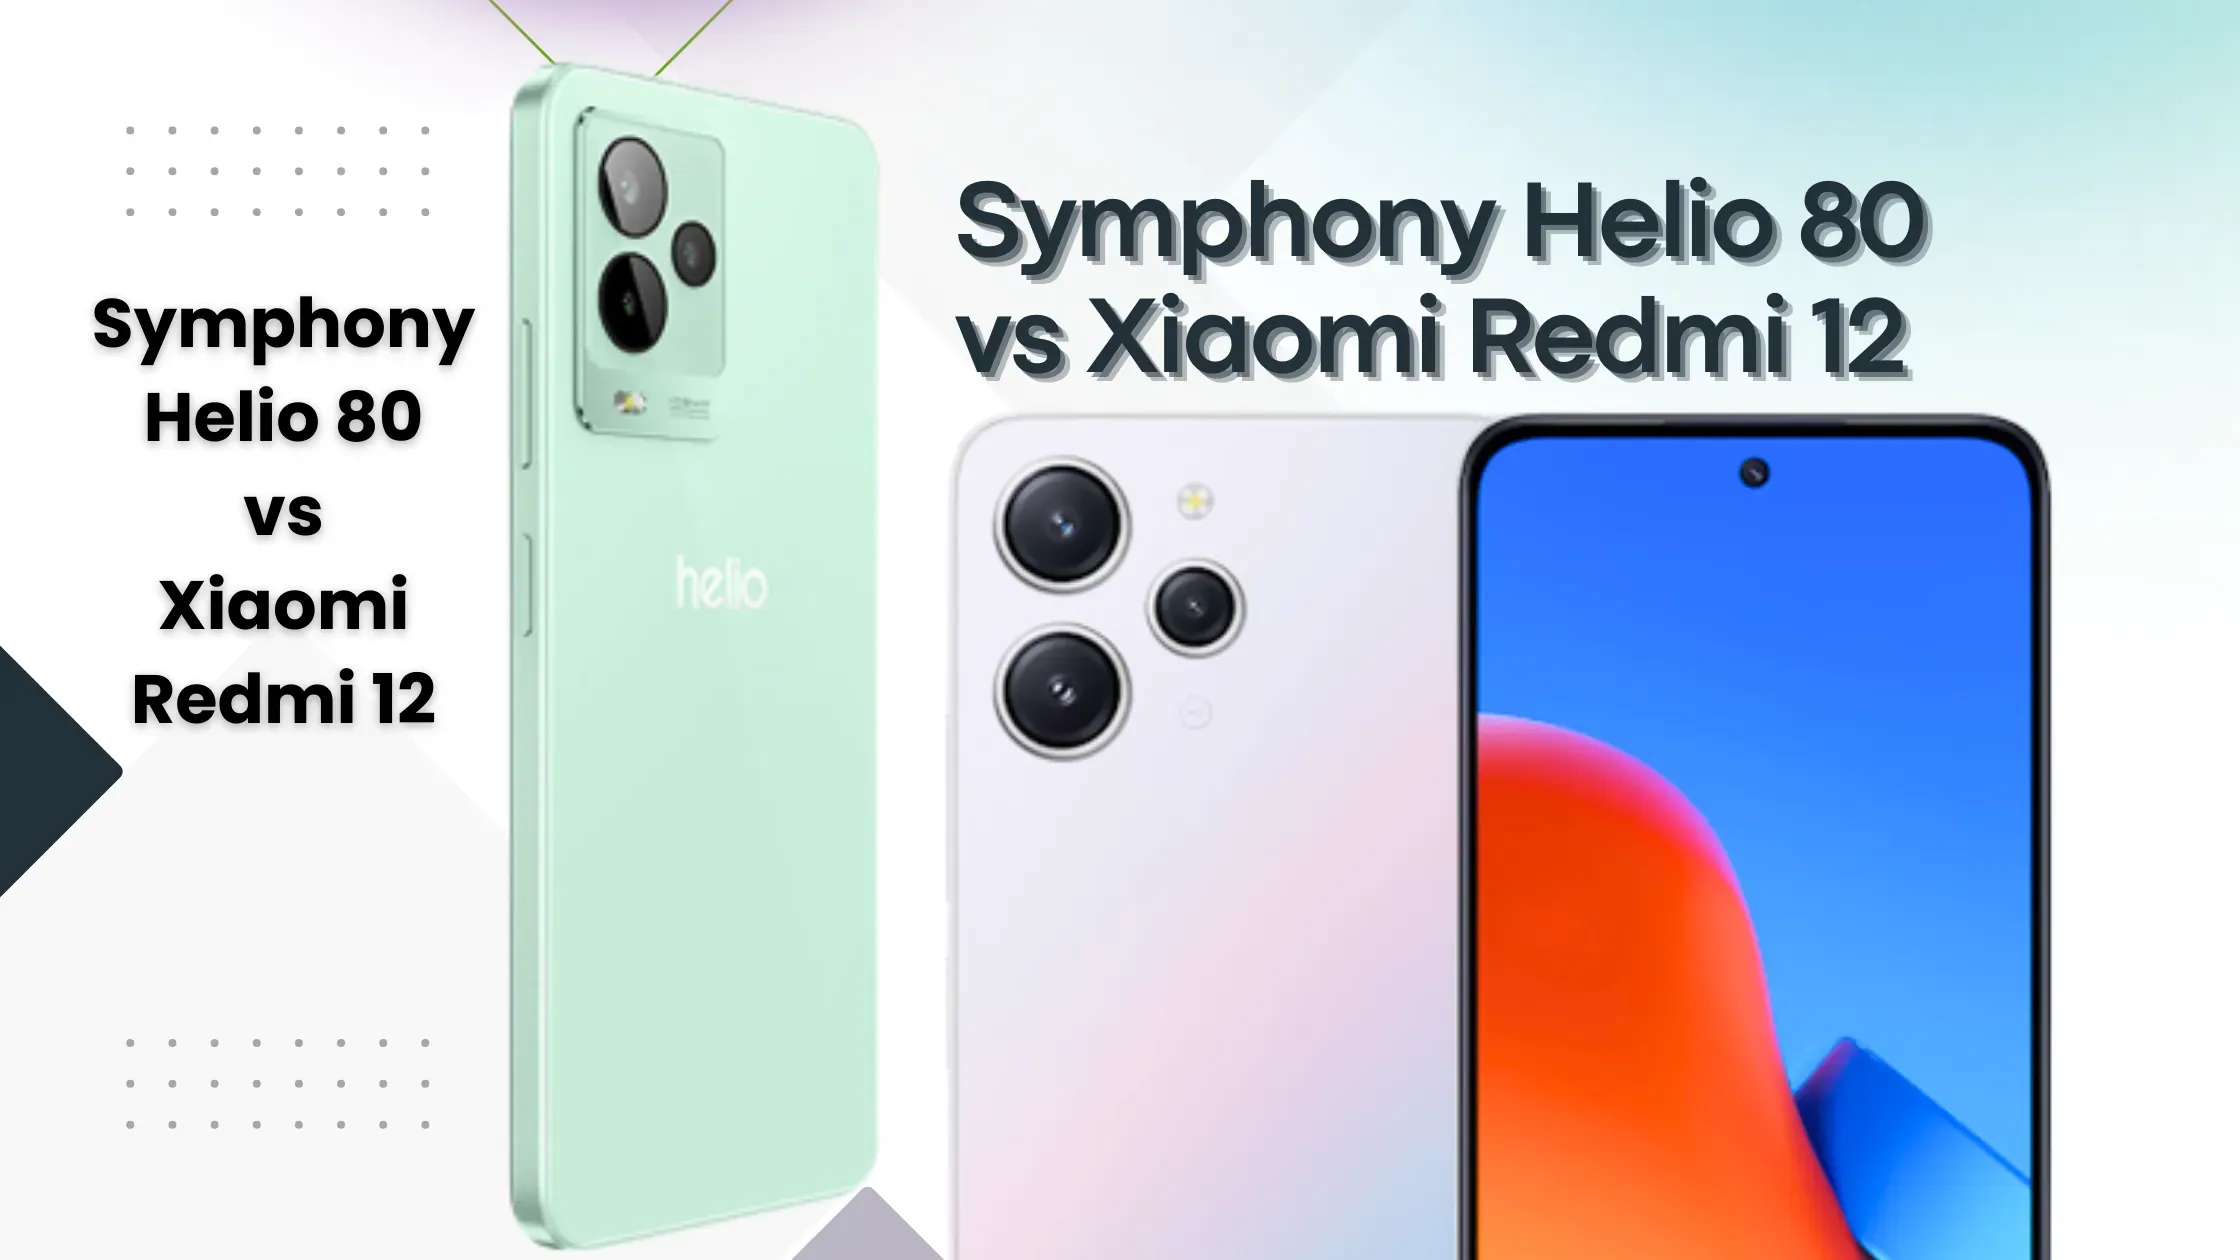 Symphony Helio 80 vs Xiaomi Redmi 12